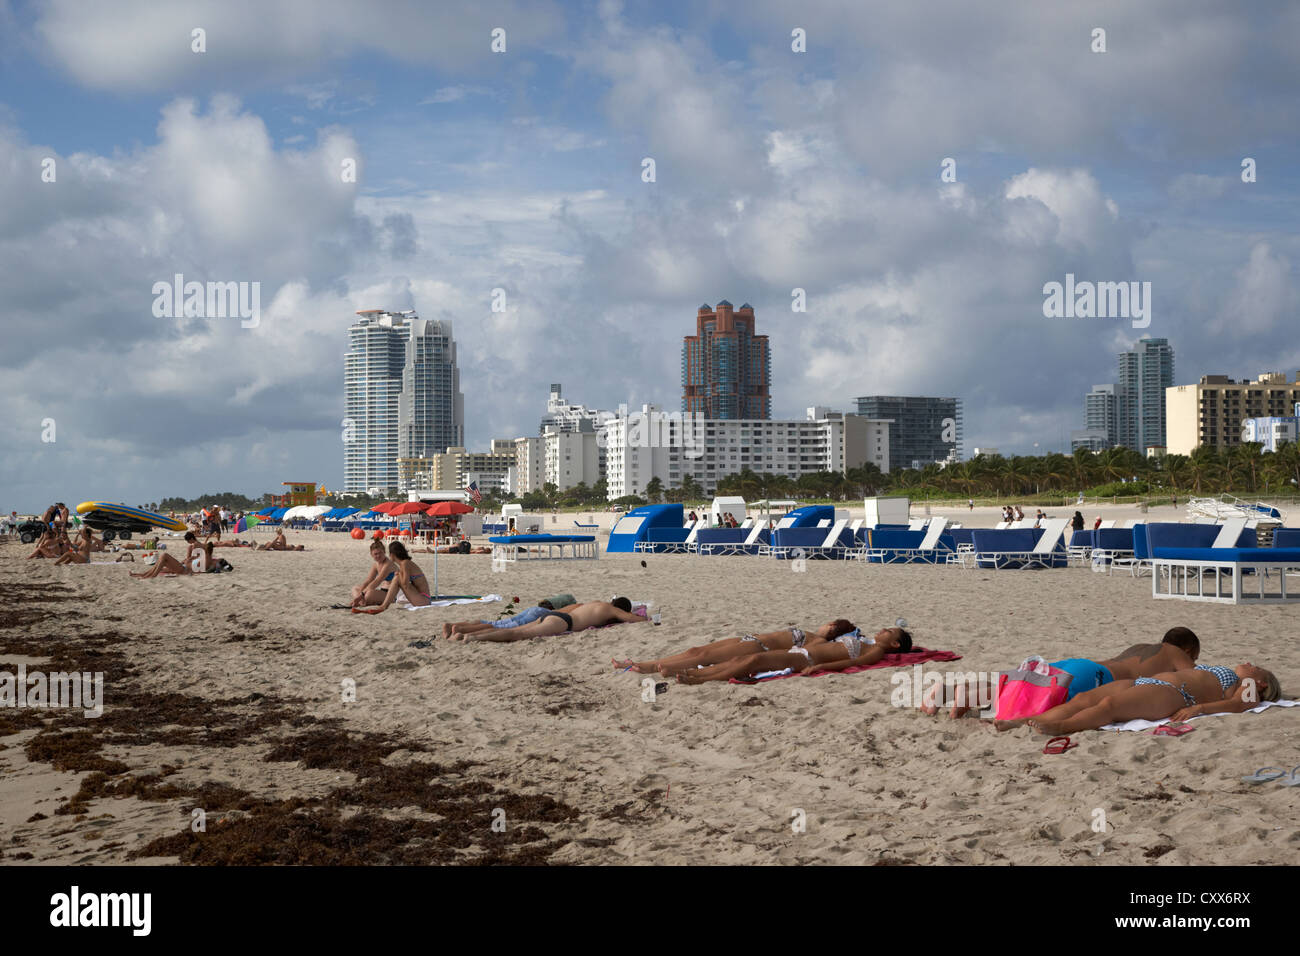 miami south beach florida usa Stock Photo